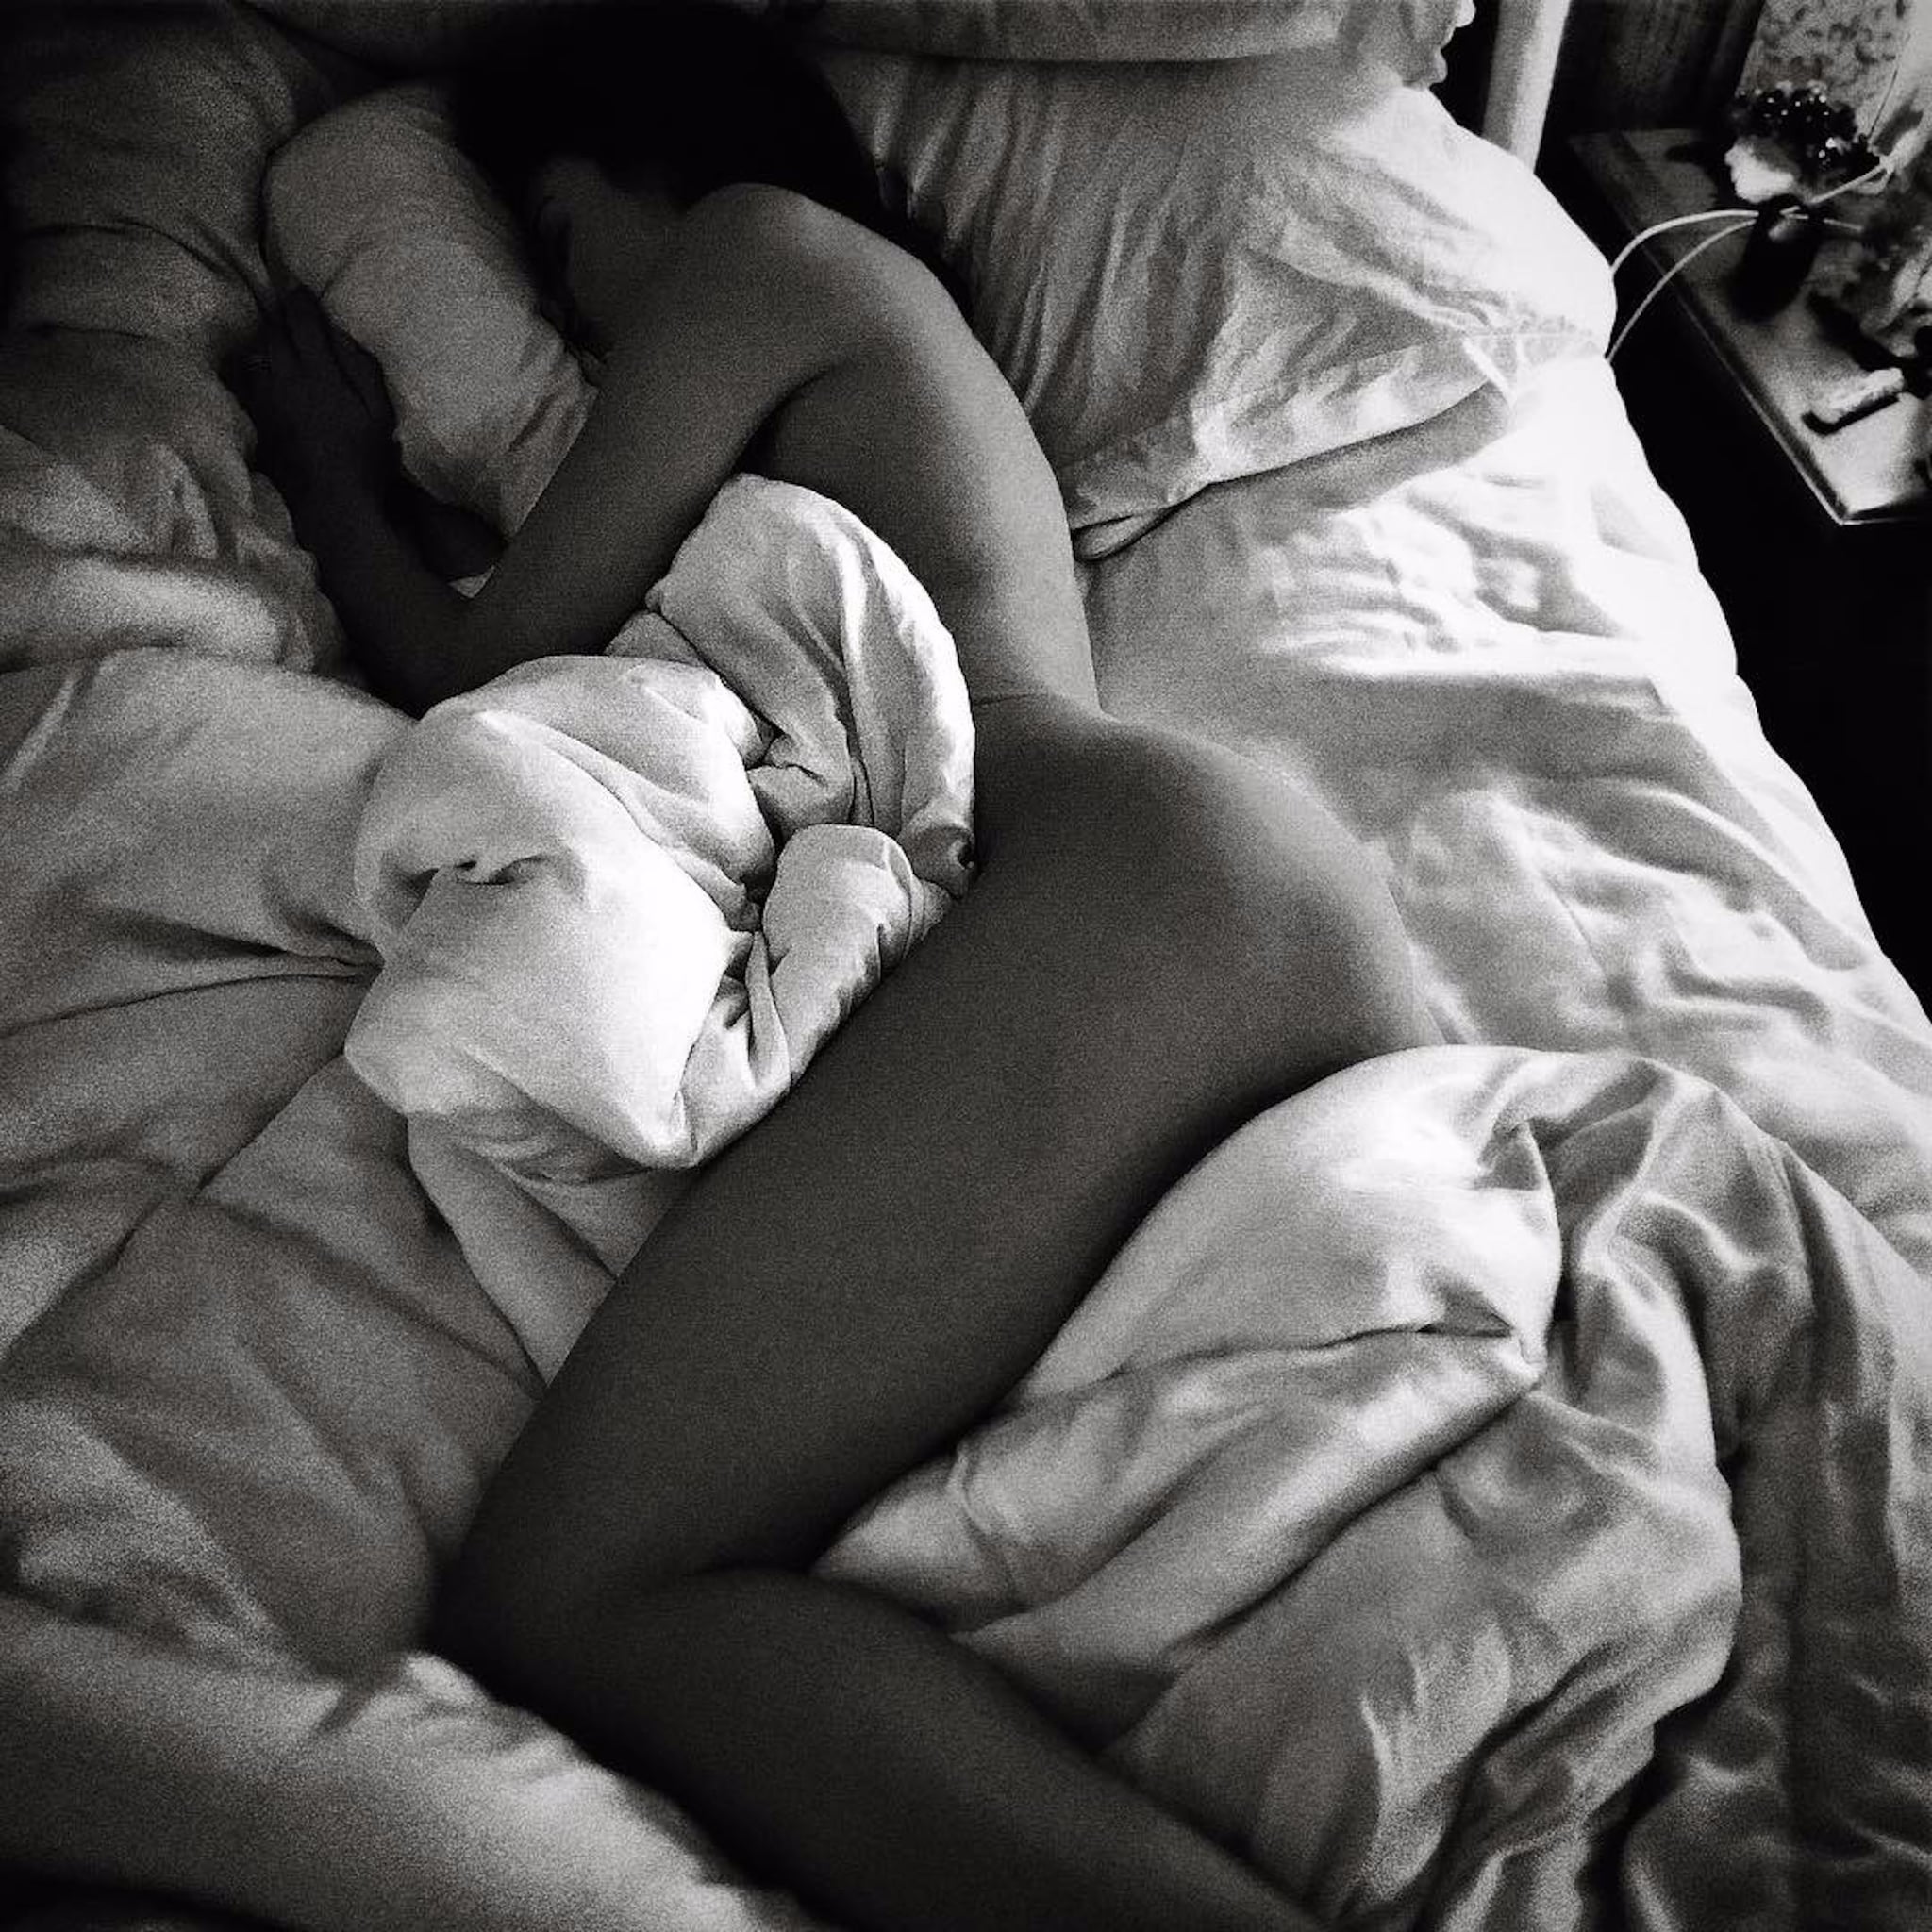 naked sleeping wife pics